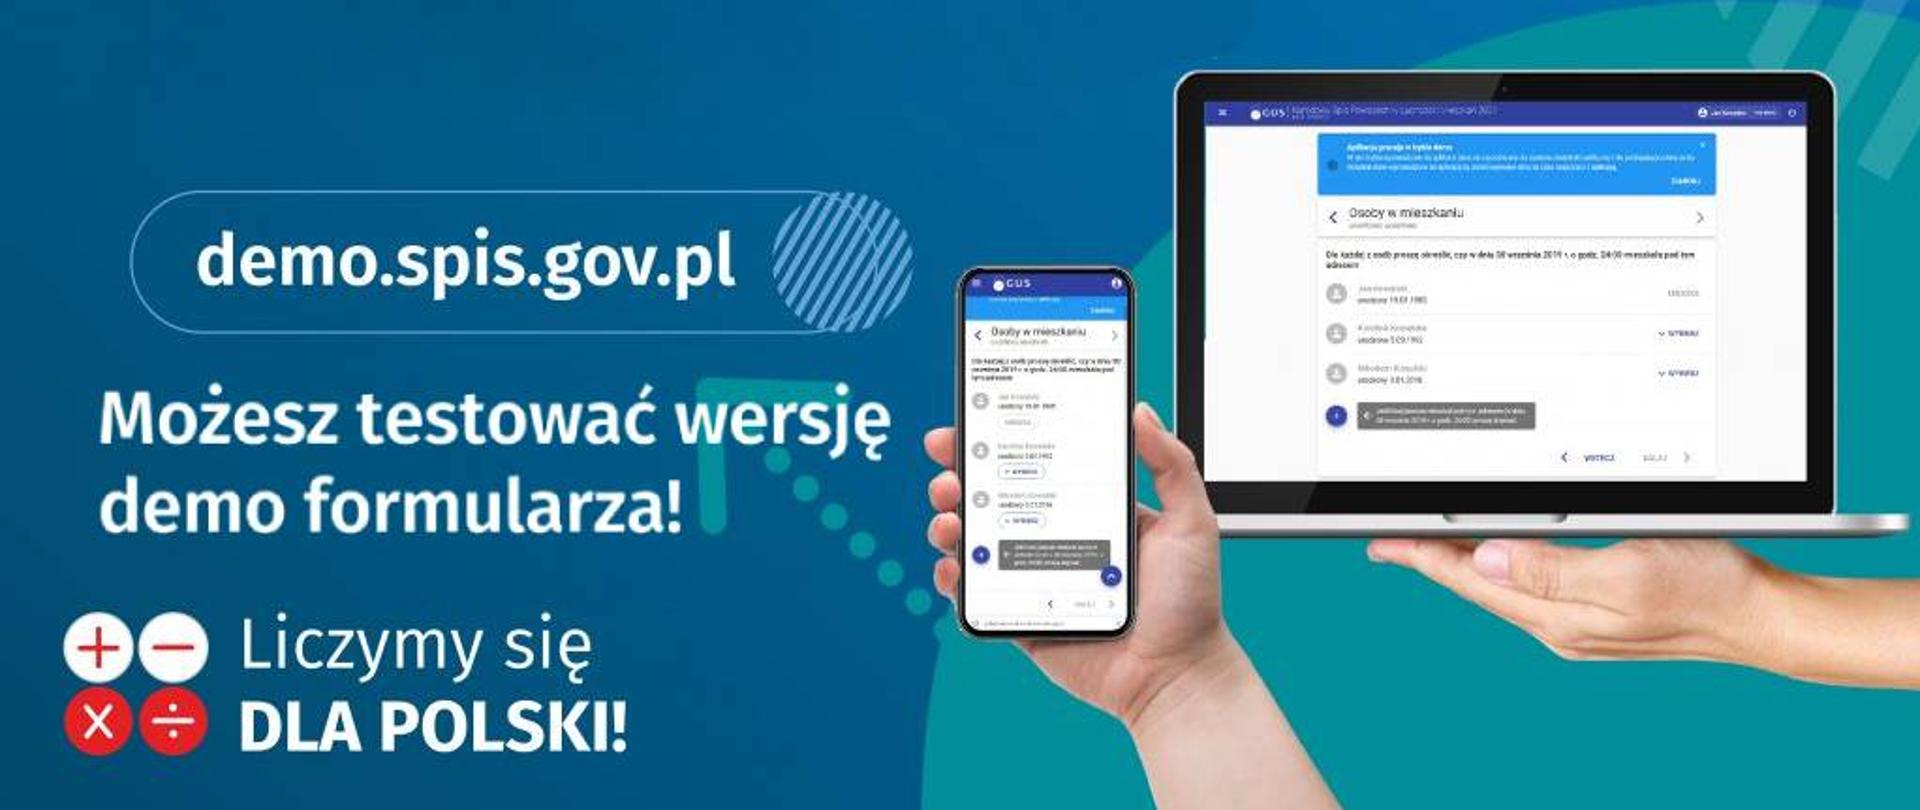 Zdjęcie rąk trzymających telefon i laptop, obok tekst "Możesz testować wersję demo formularza! demo.spis.gov.pl Liczymy się DLA POLSKI"